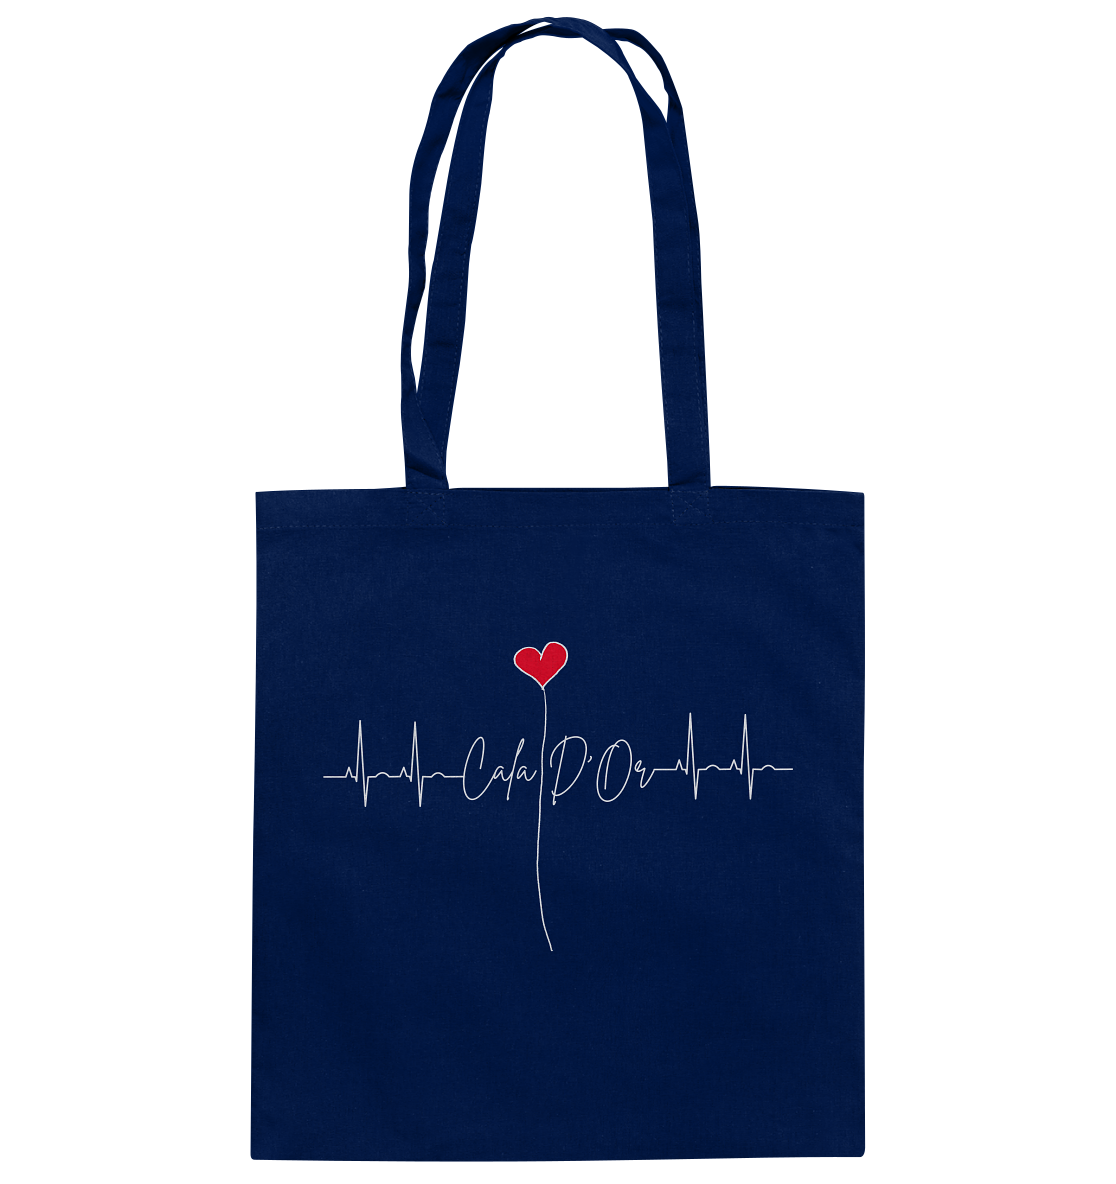 Marineblaue Baumwolltragetaschen mit weißer Aufschrift Cala D'Or und einem Herz